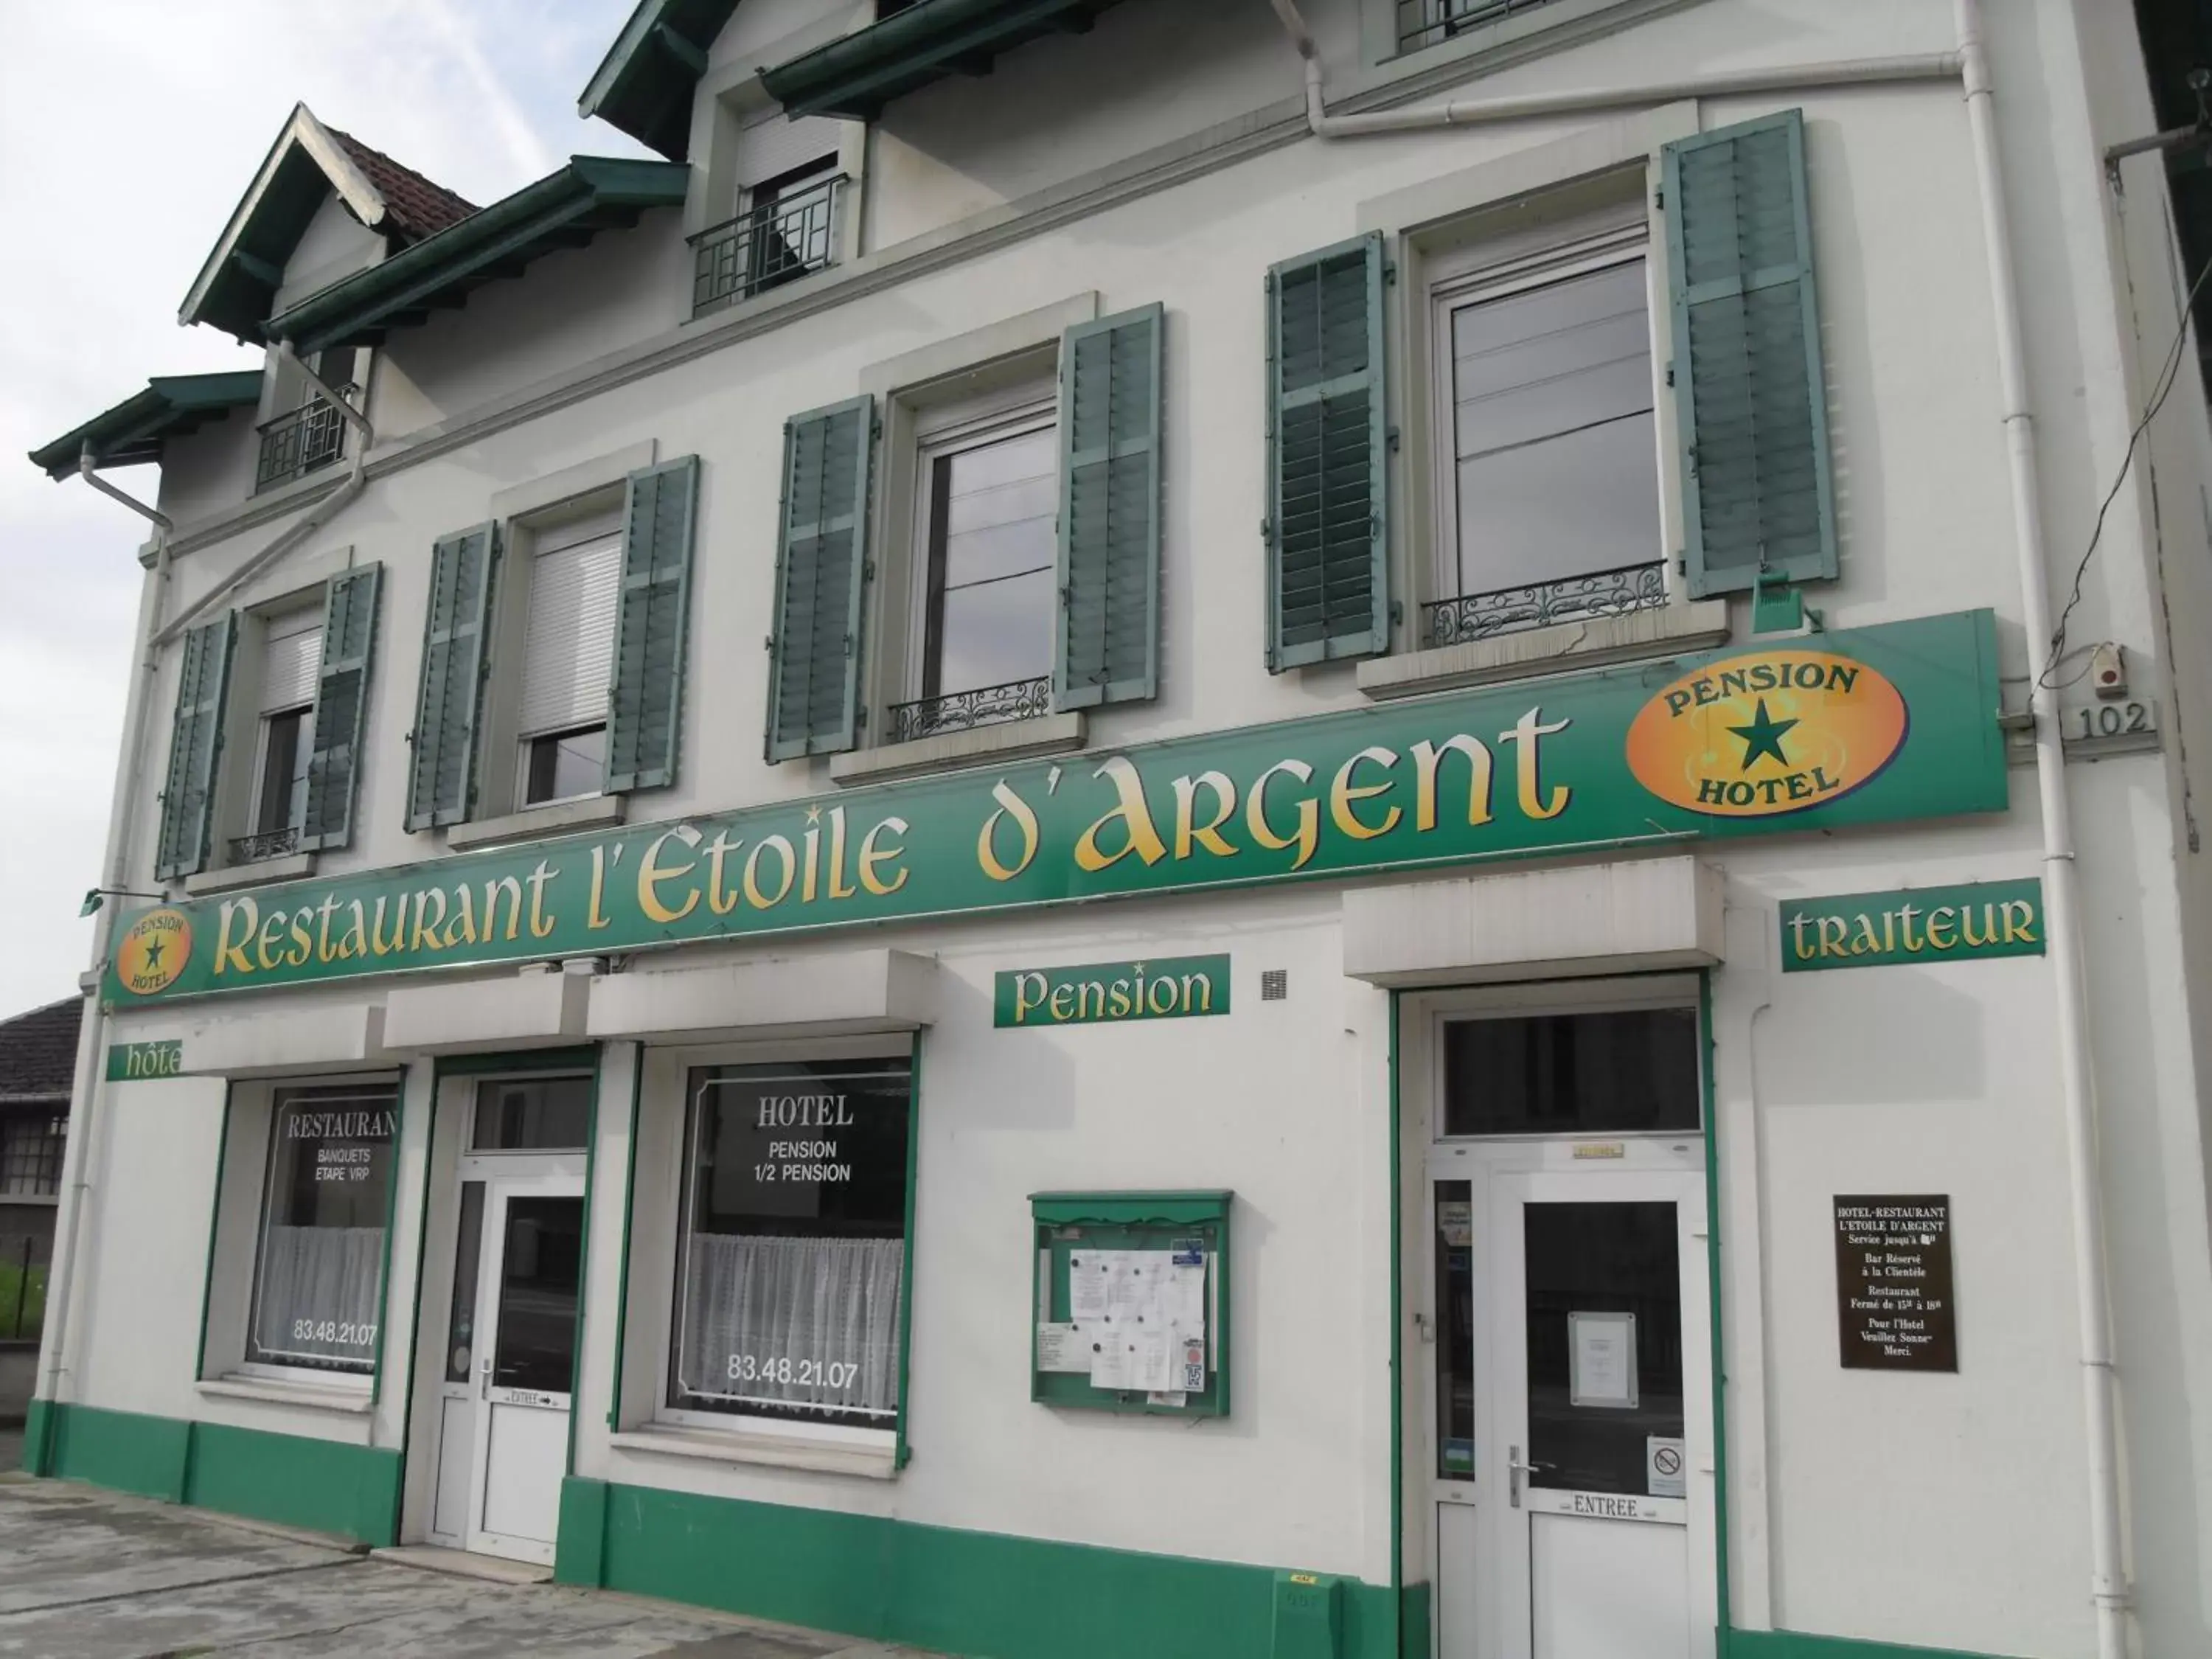 Facade/entrance, Property Building in L Etoile d'Argent